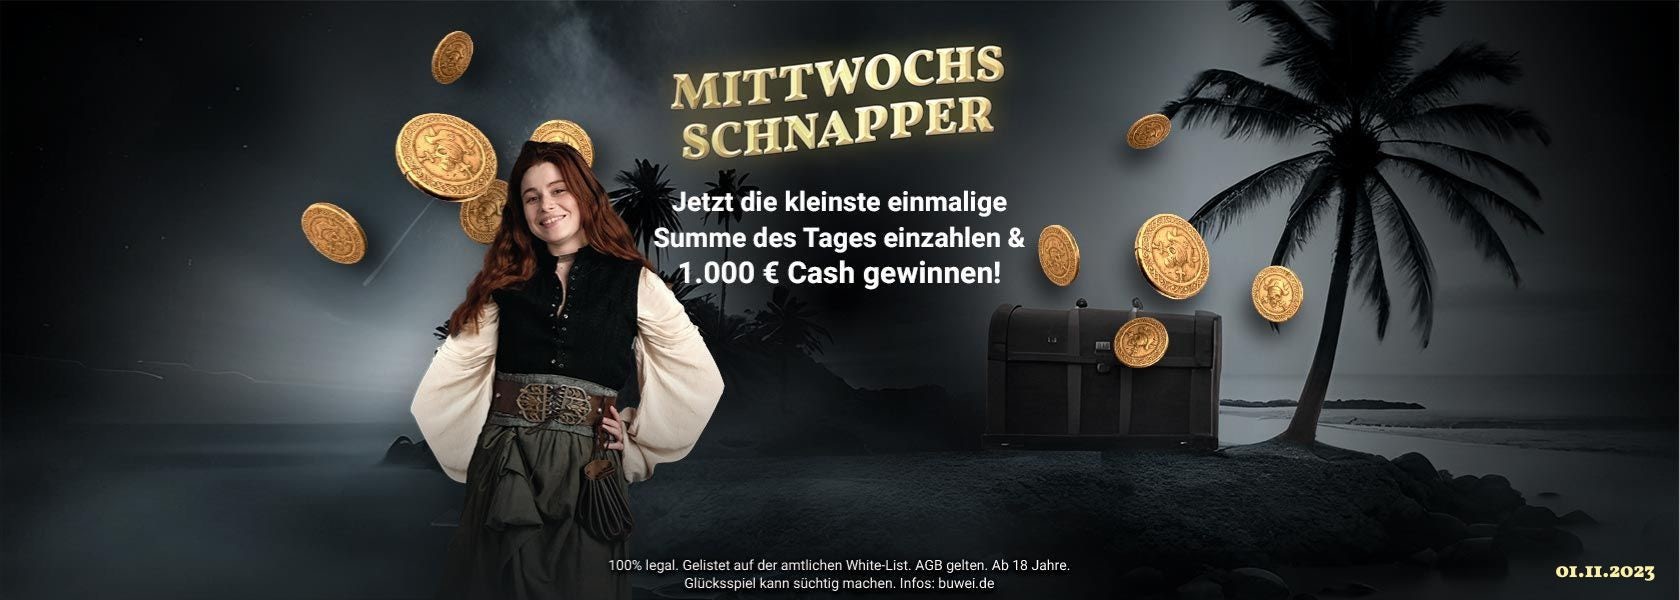 jackpotpiraten-mittwochs-schnapper-011123